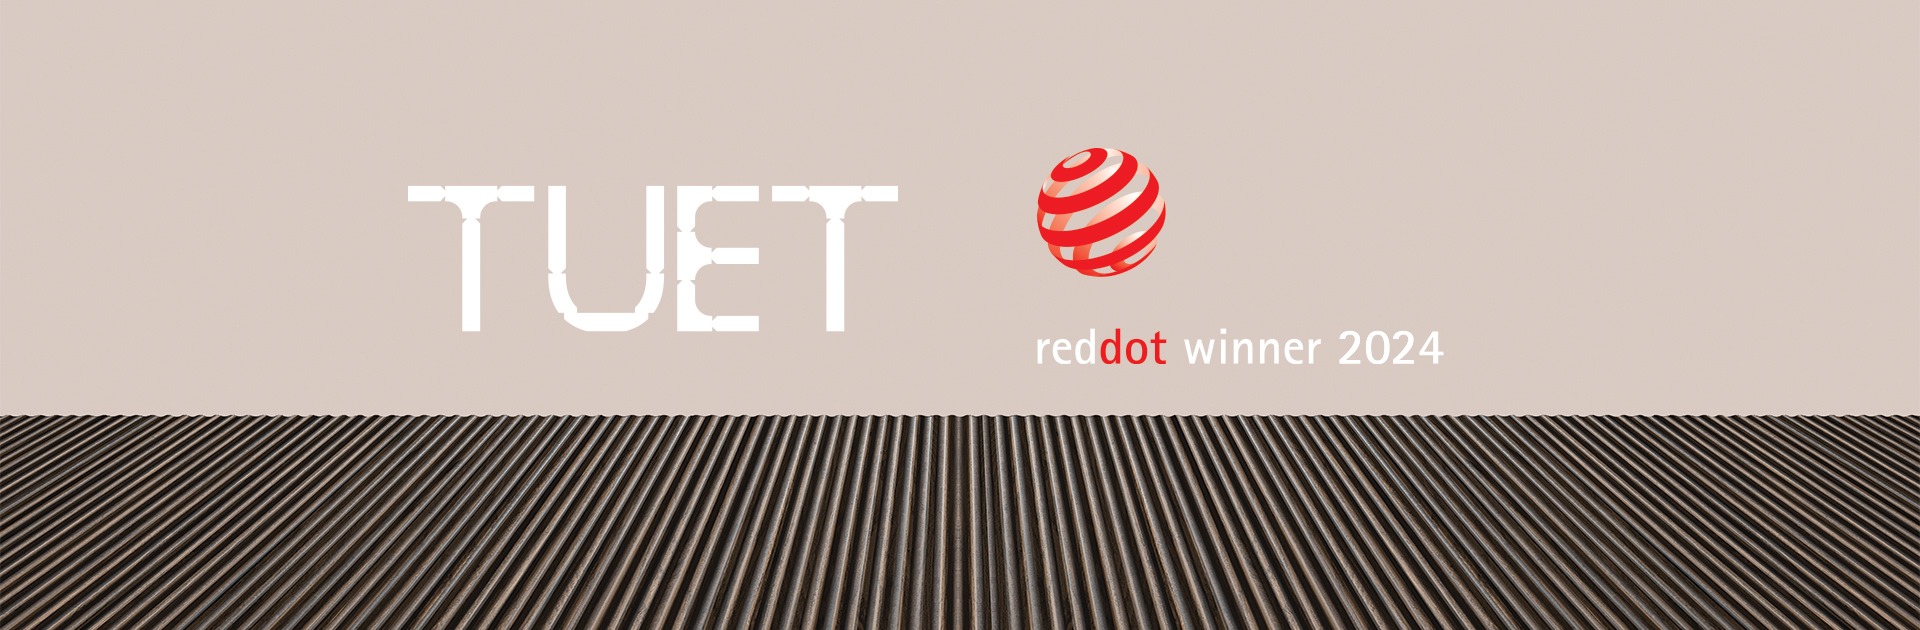 Tuet gewinnt Red Dot Award 2024